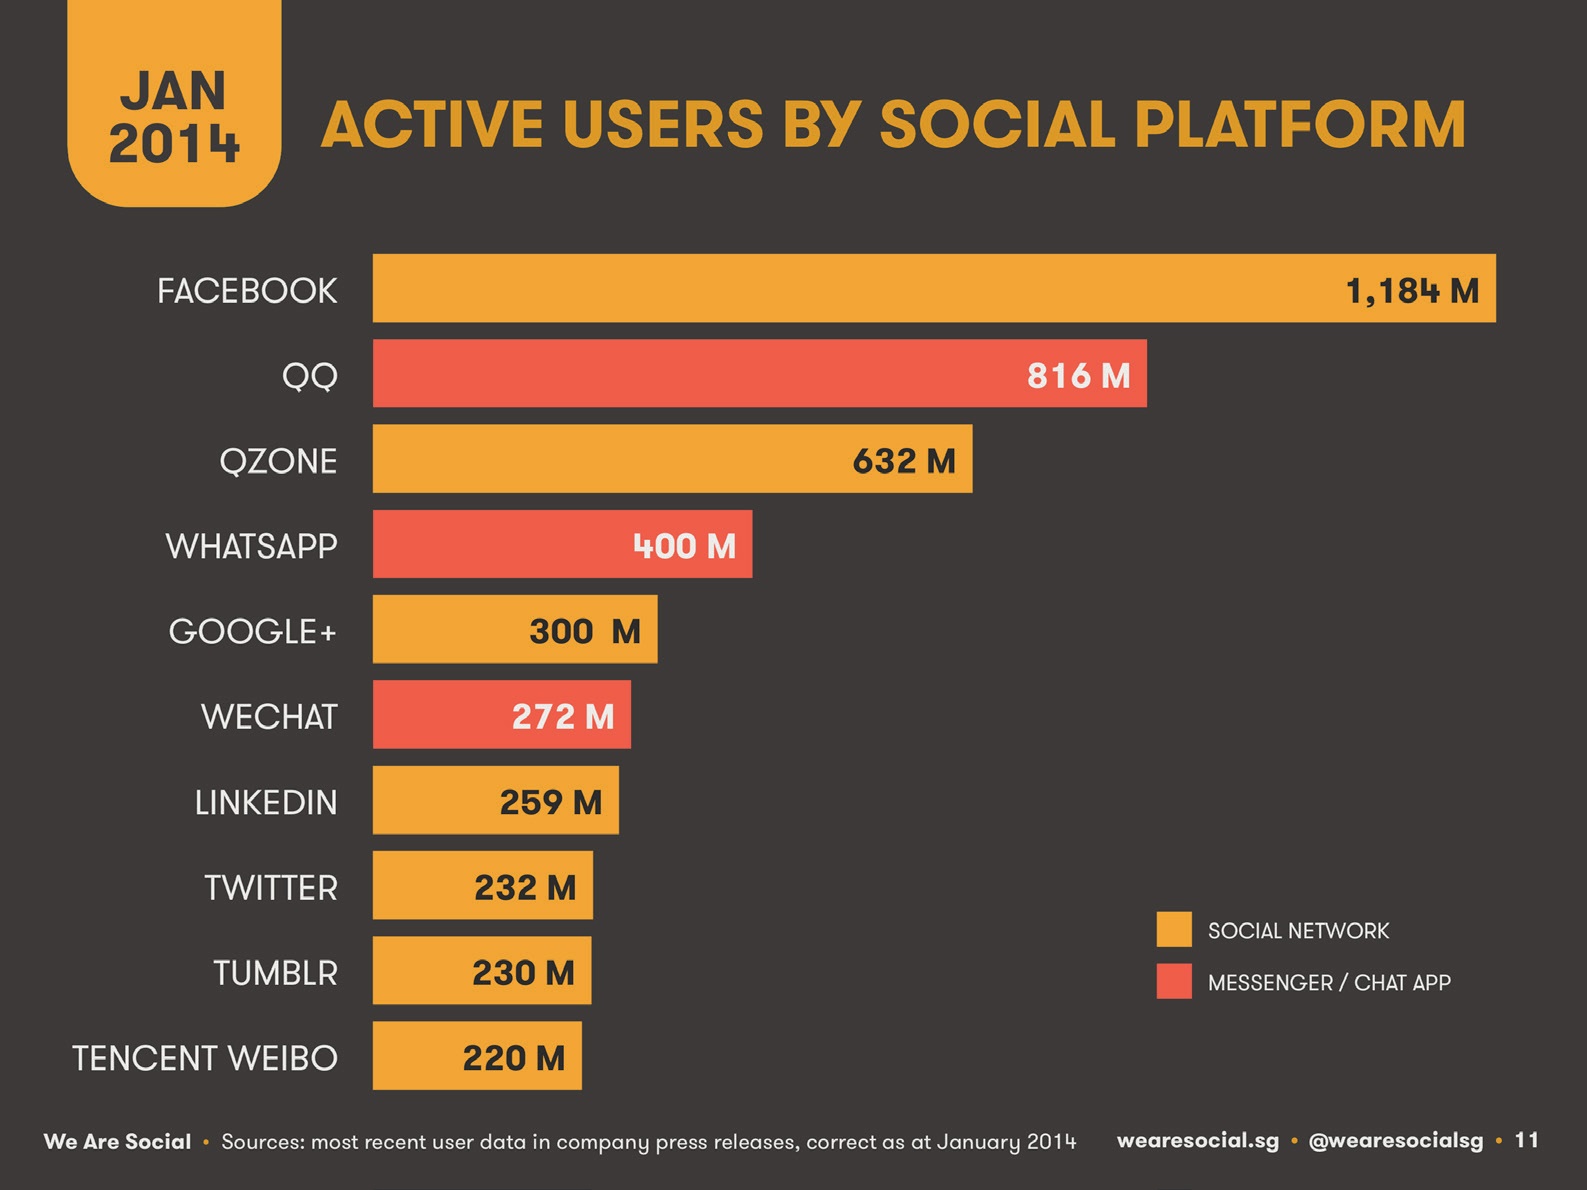 Usuarios activos (millones) de
las principales plataformas sociales en enero de 2014